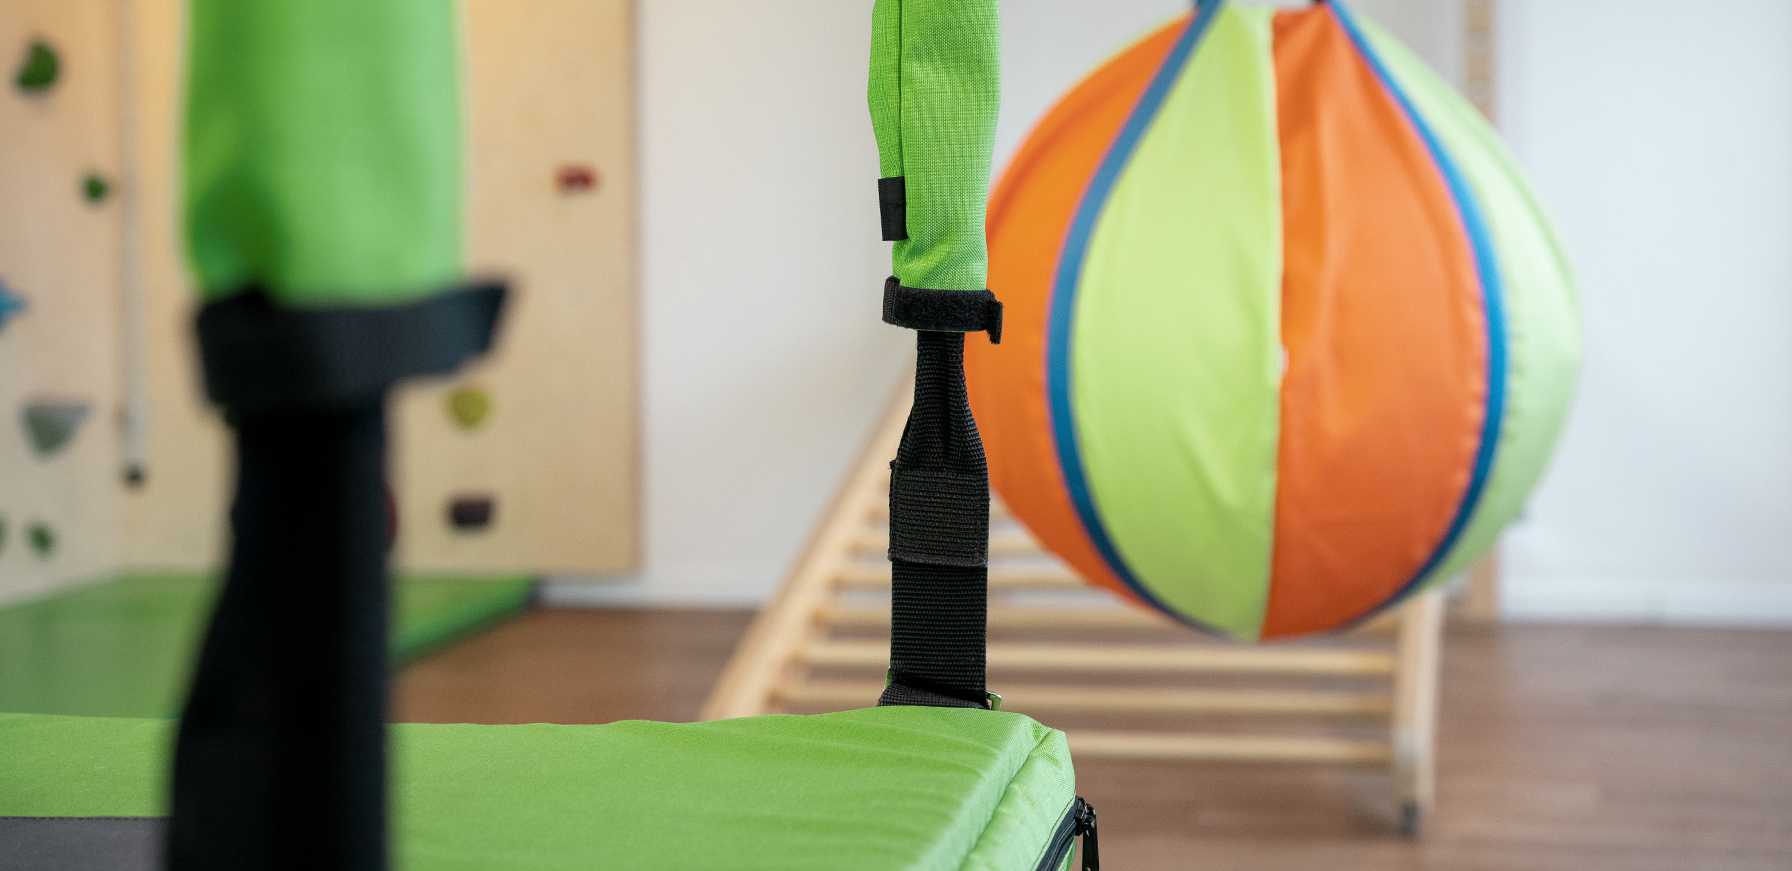 Physiotherapie Am Klagesmarkt – Behandlungsraum für Kinder mit Kletterwand